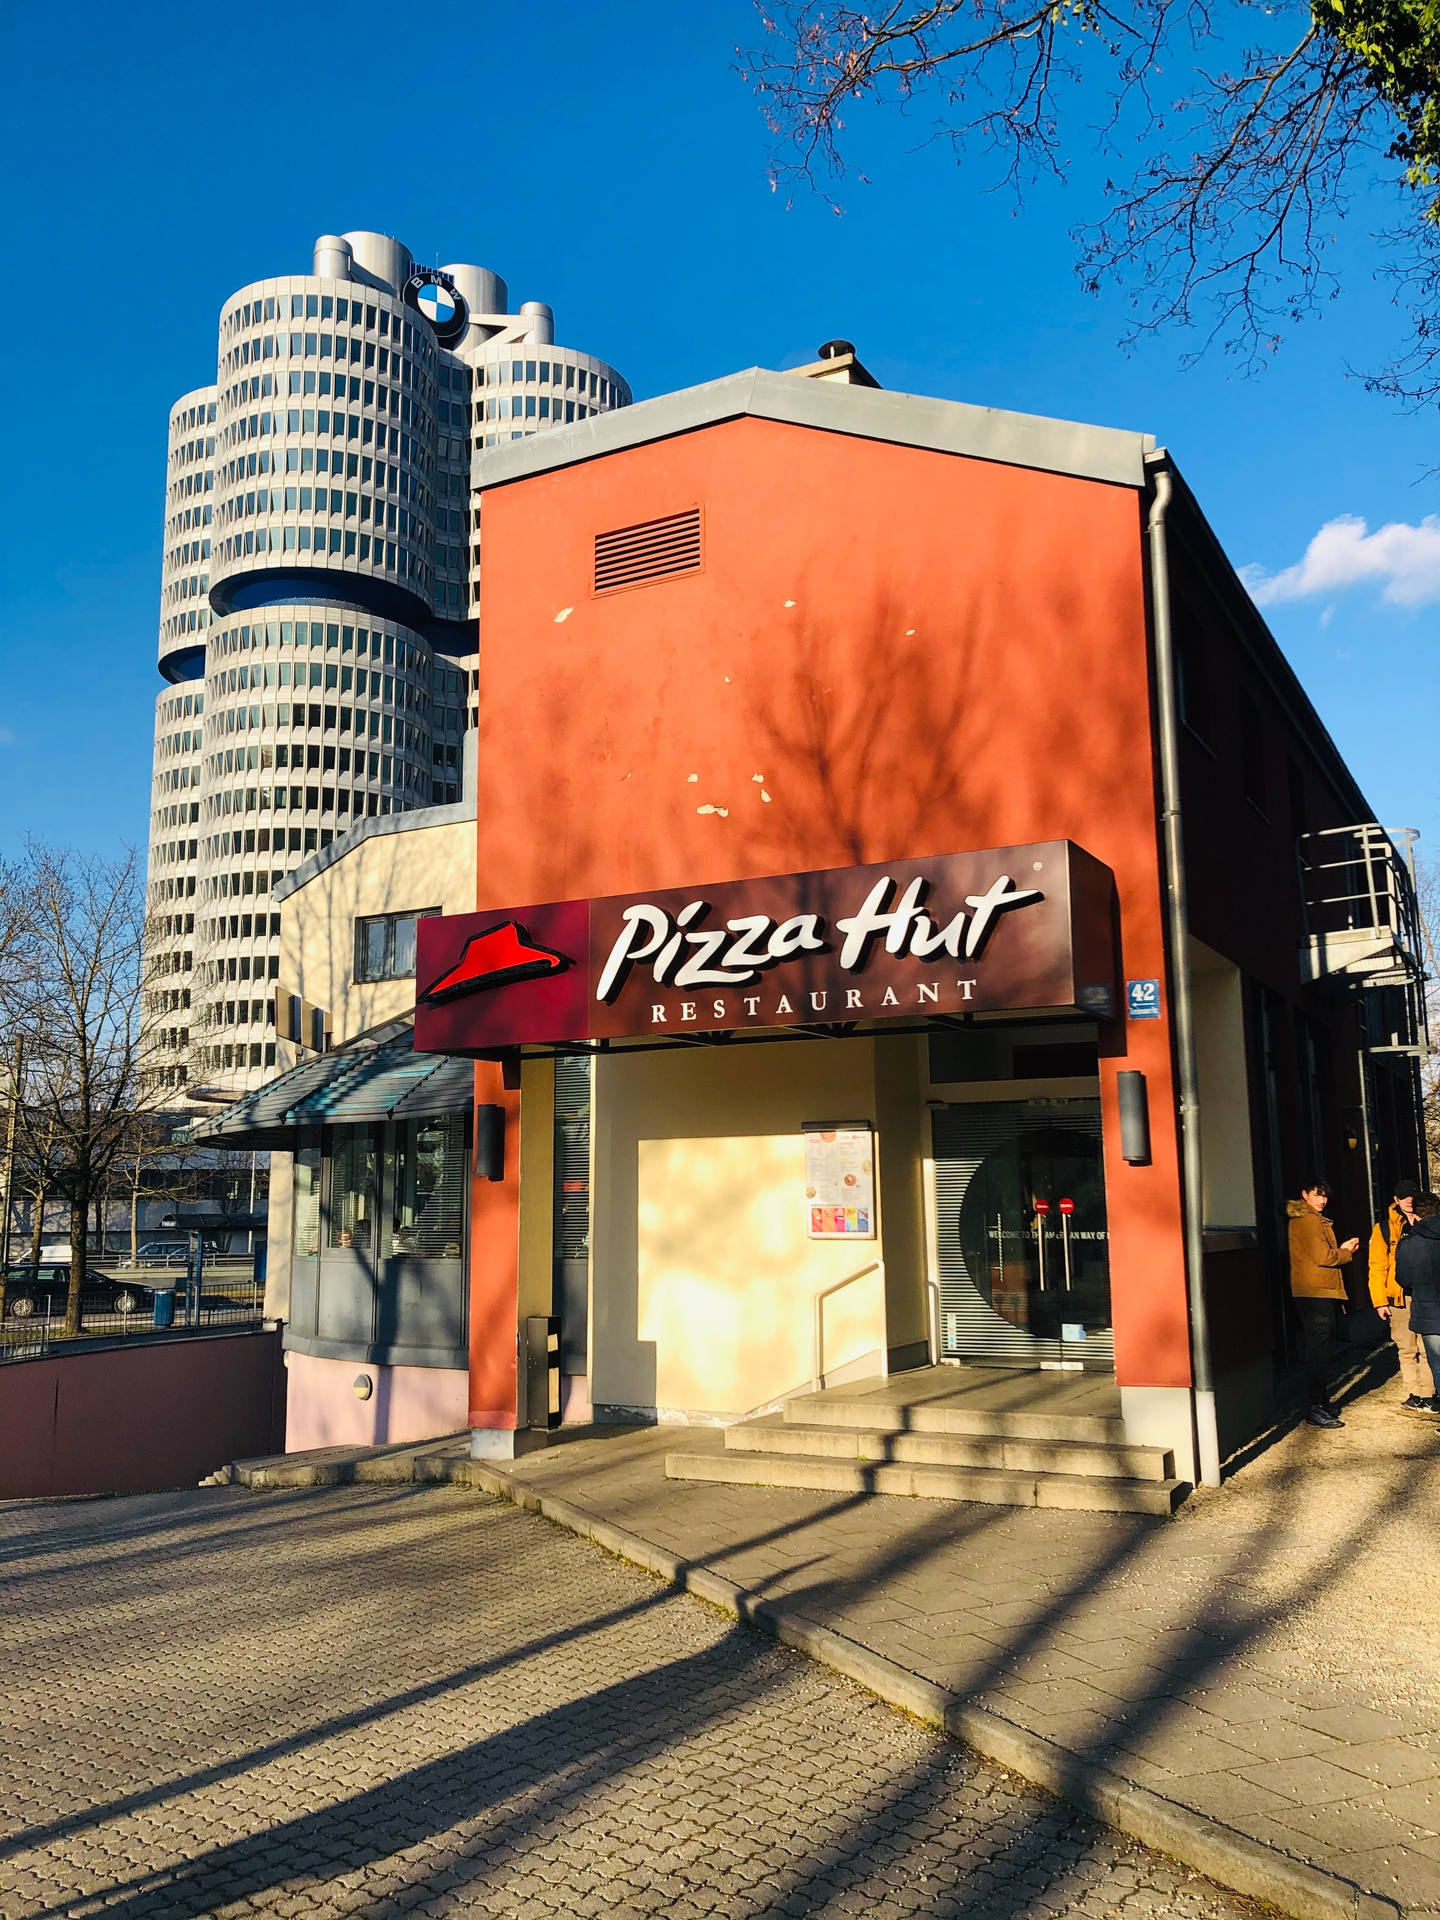 Pizza Hut Restaurant Facade